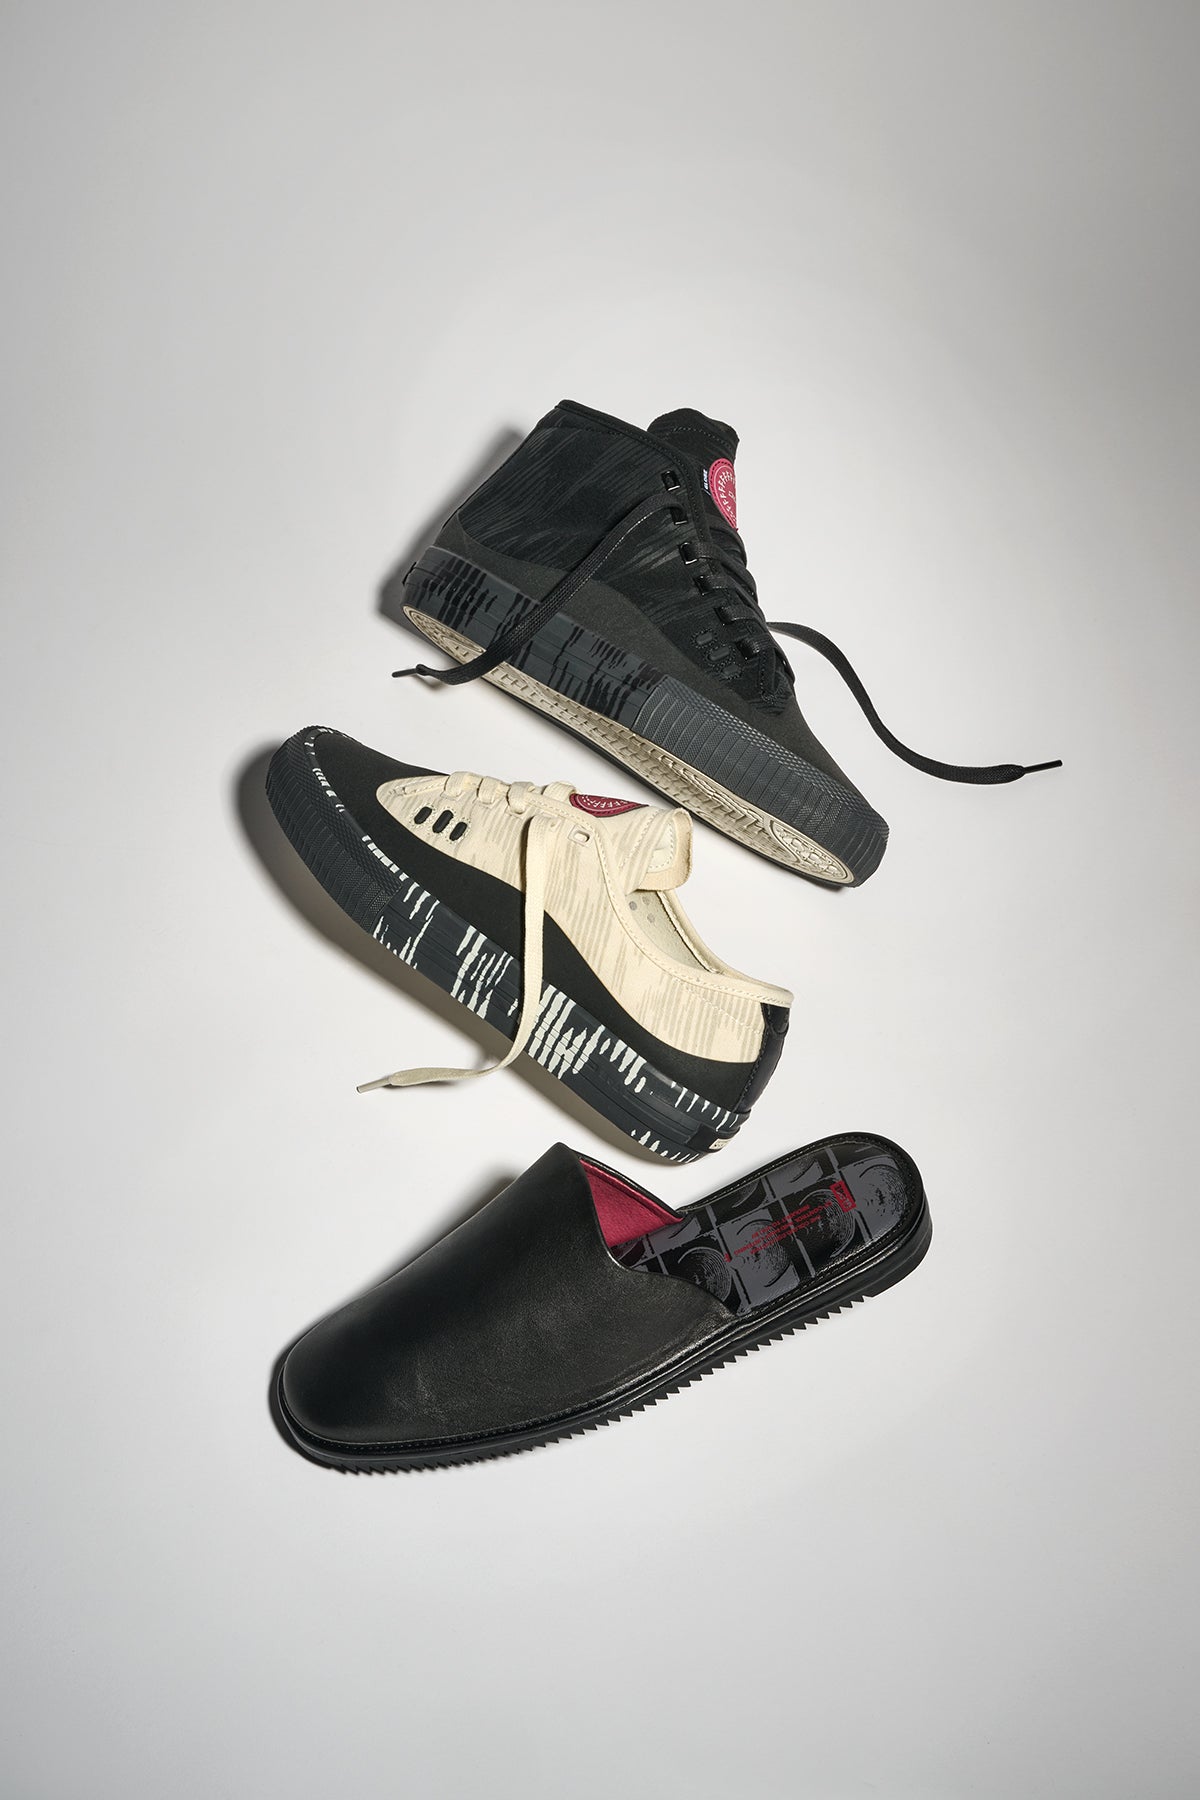 mule preto antigo skateboard sapatos